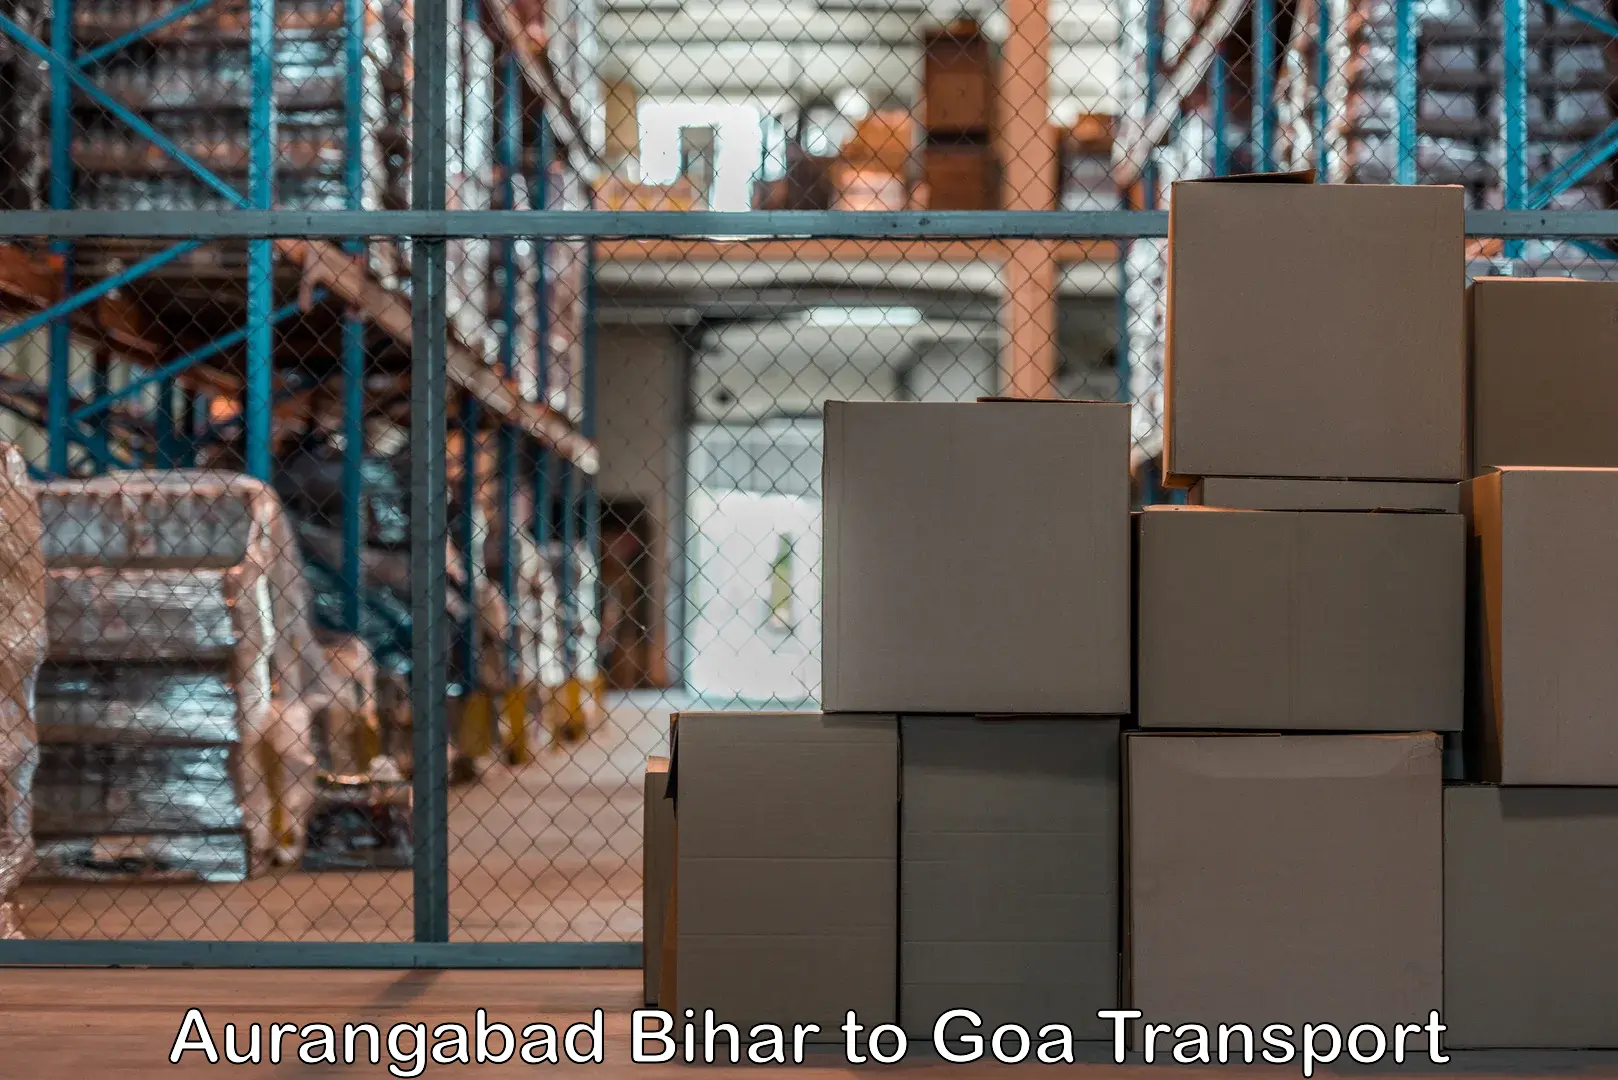 Air freight transport services Aurangabad Bihar to Panjim